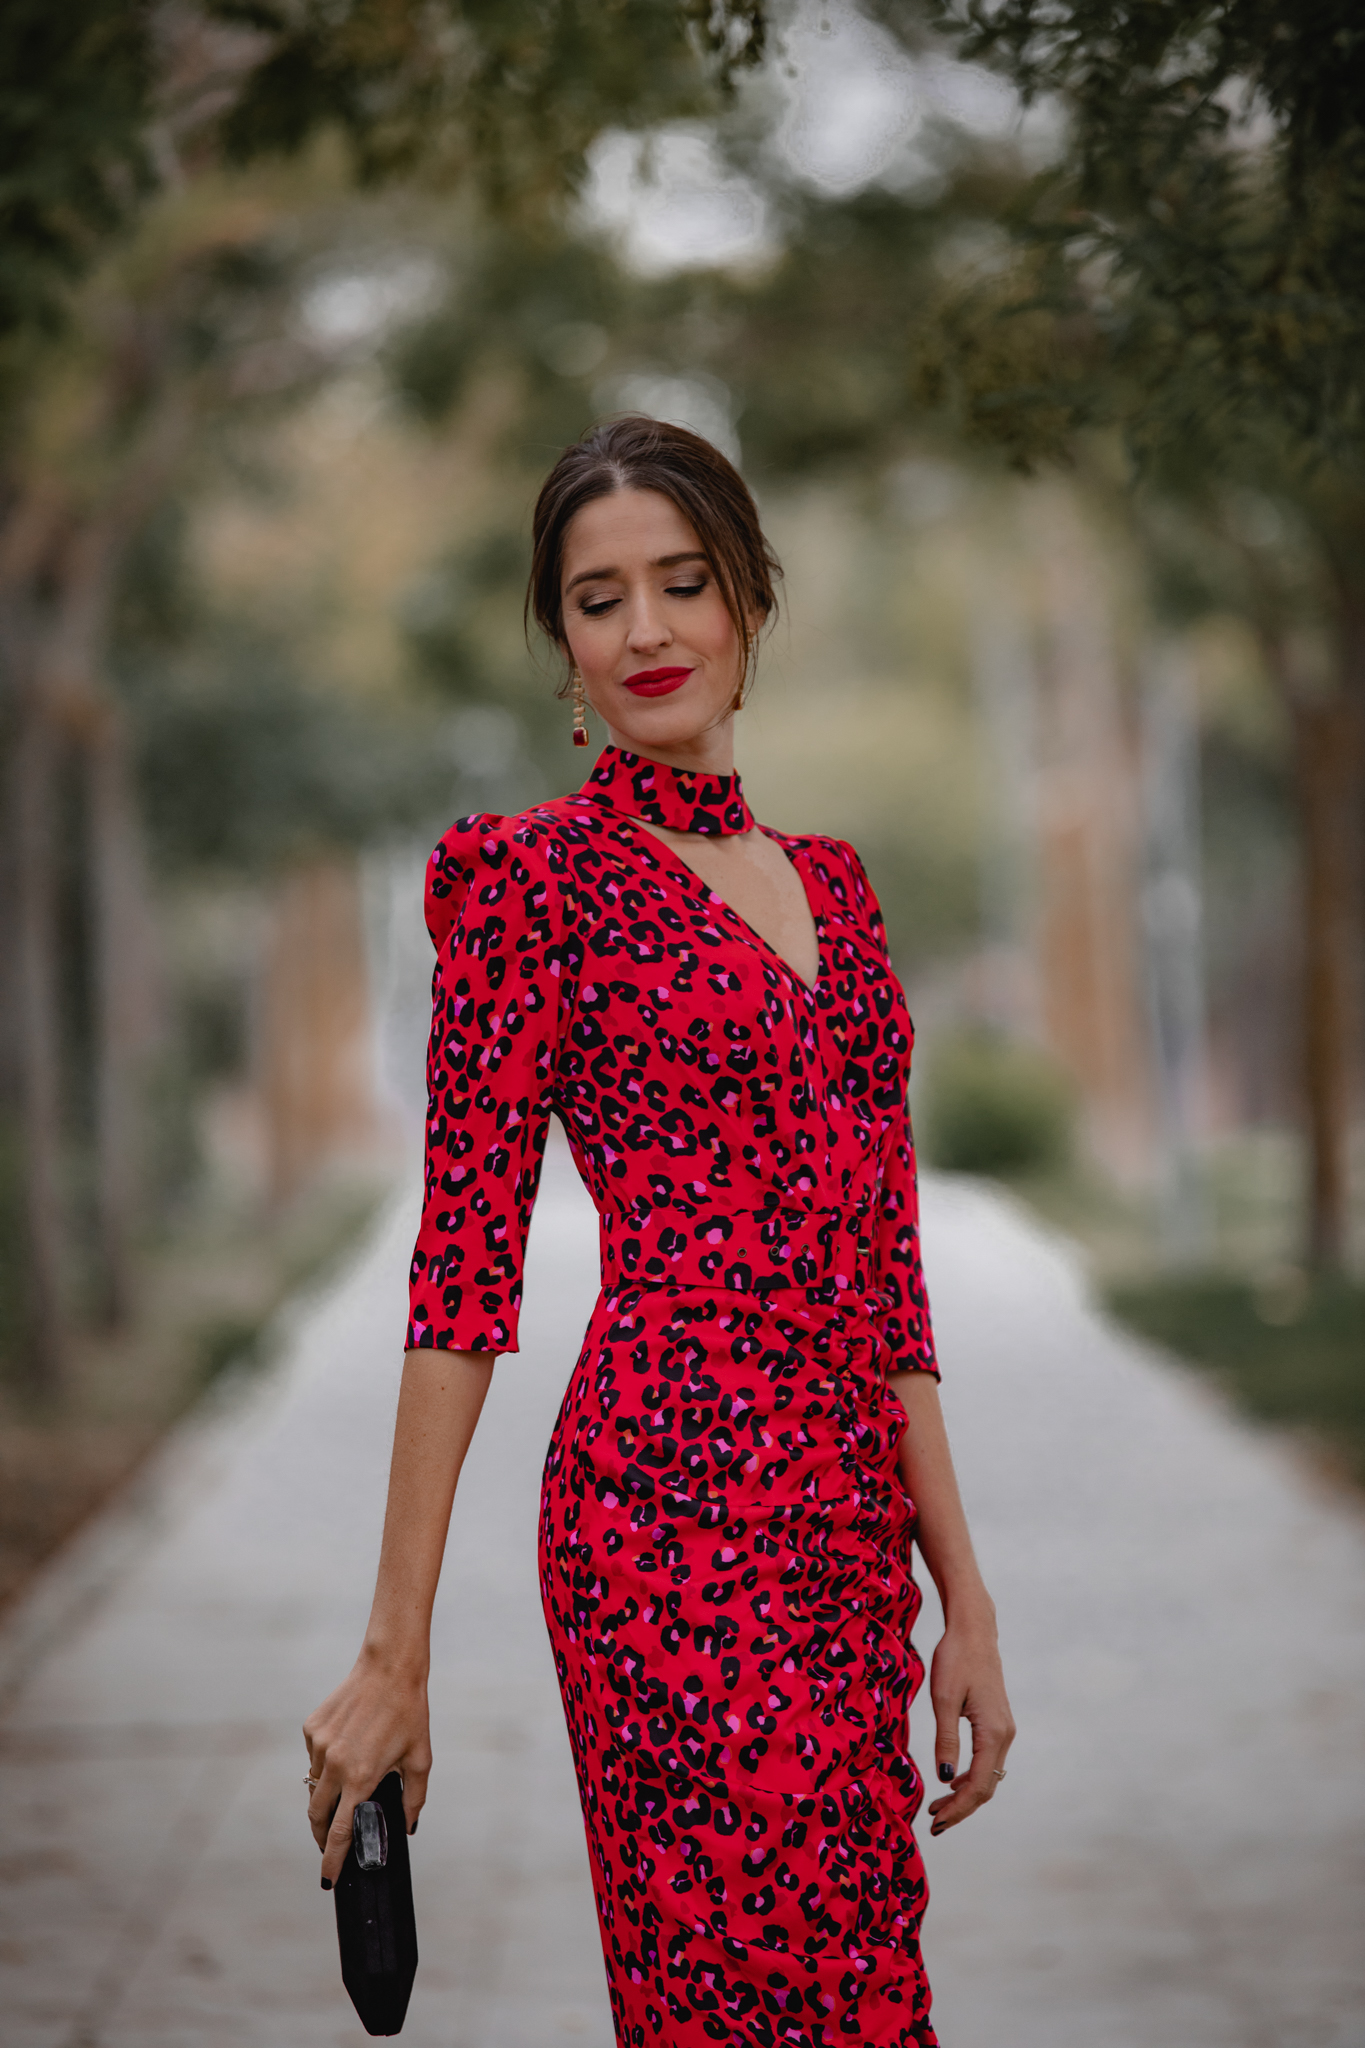 invitada perfecta vestido rojo invierno